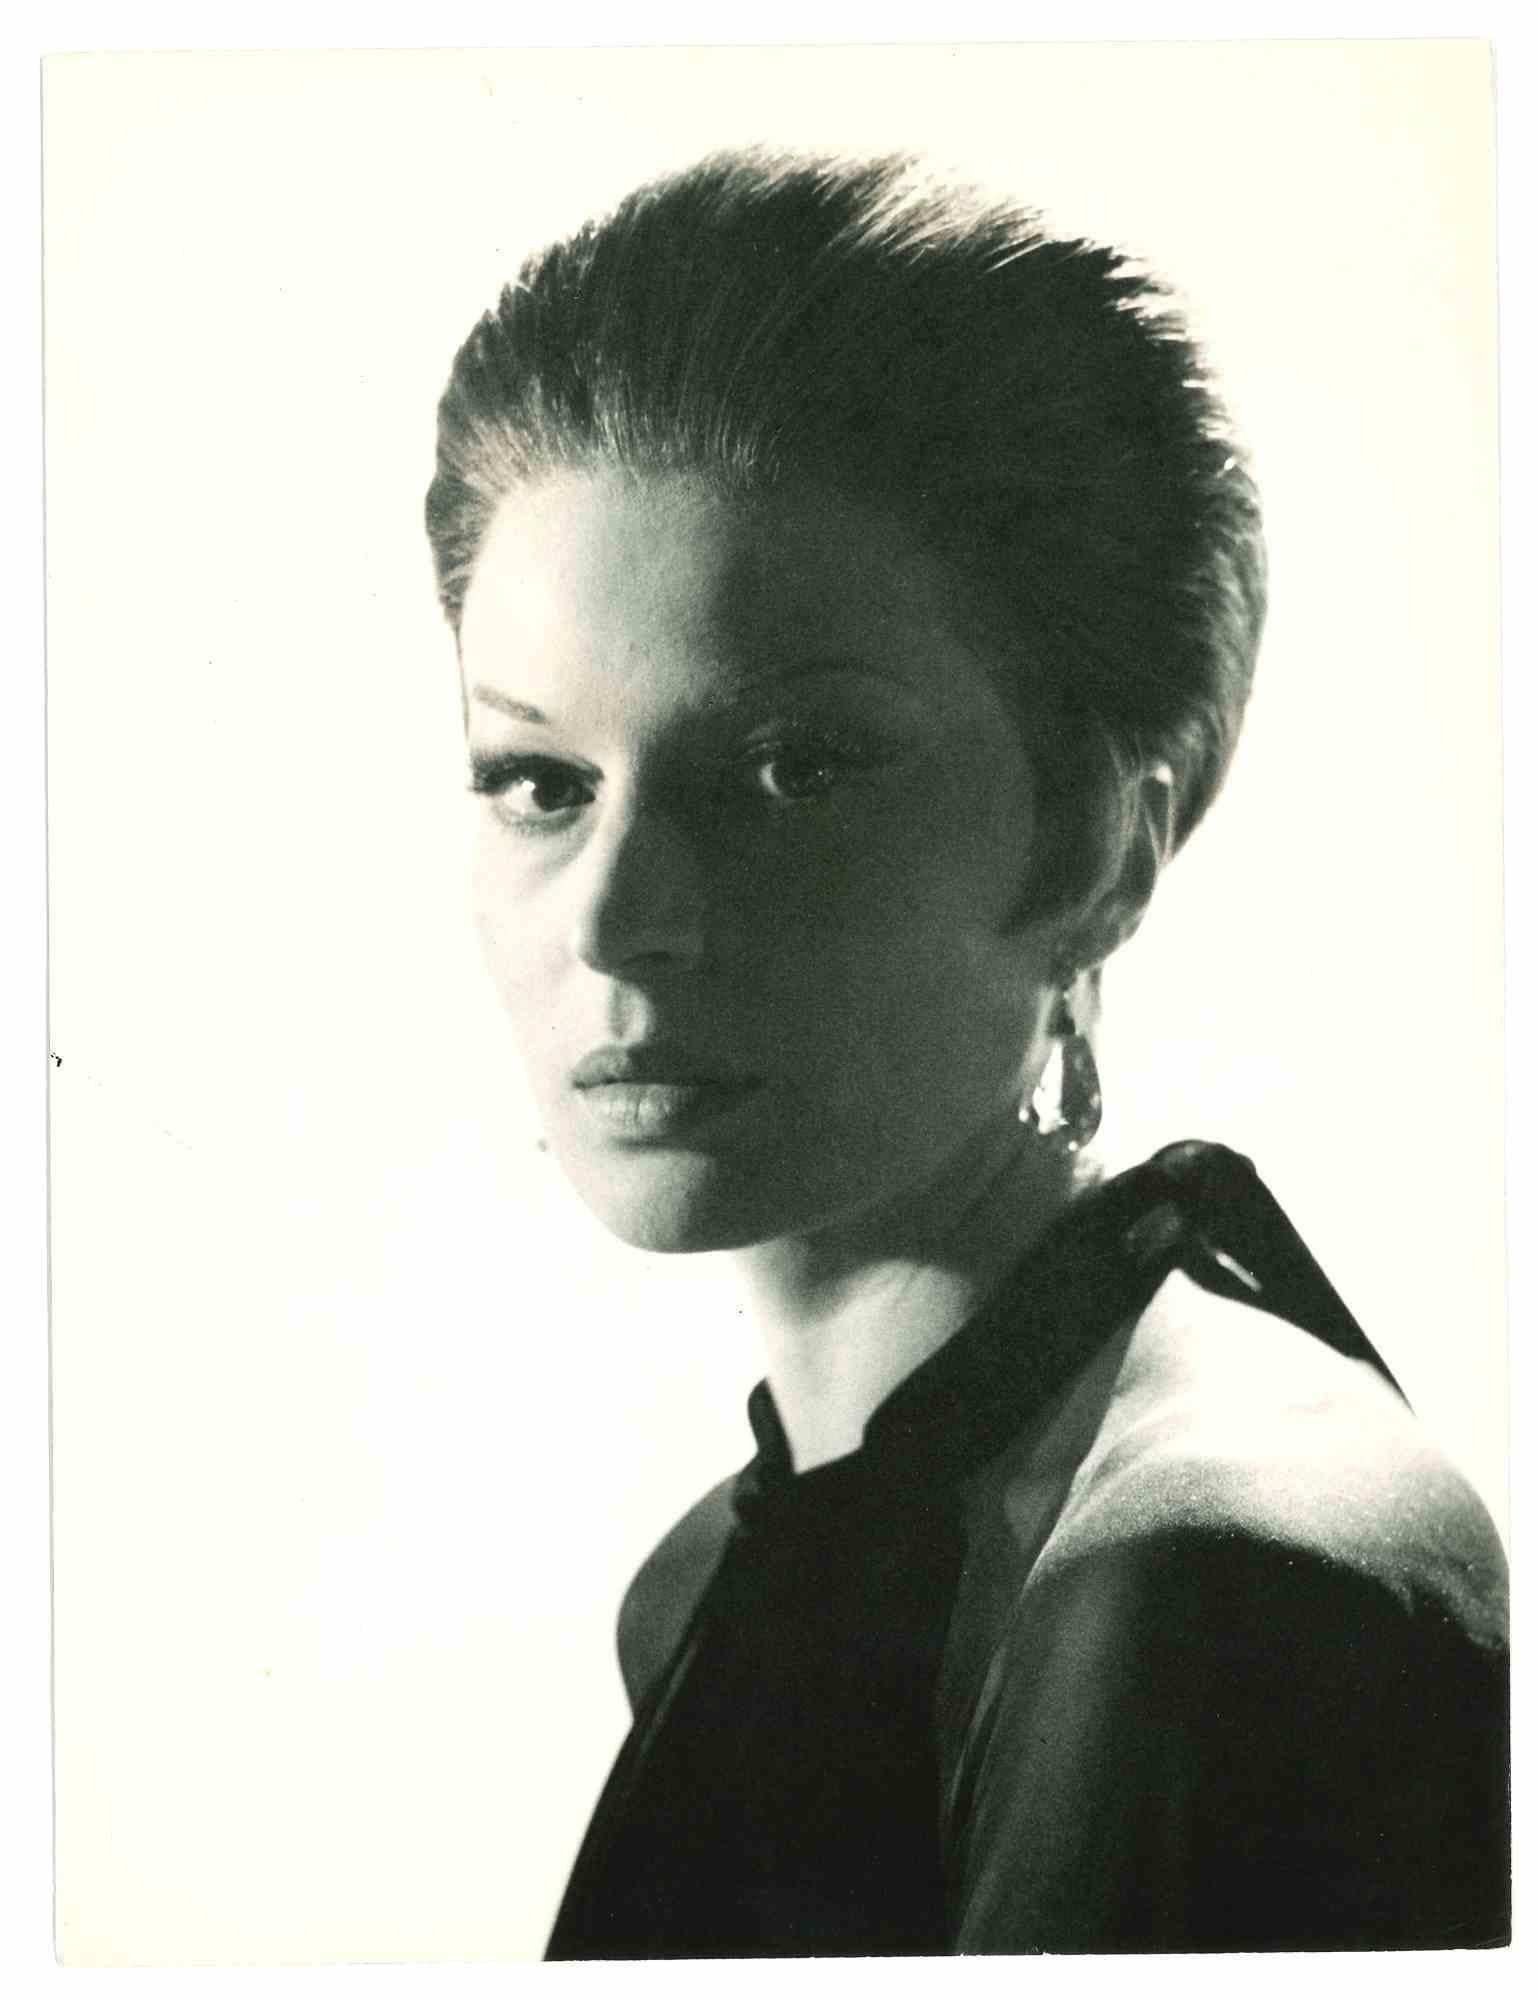 Unknown Figurative Photograph – Porträt von Silvana Mangano – Goldenes Zeitalter des italienischen Kinos – 1960er Jahre